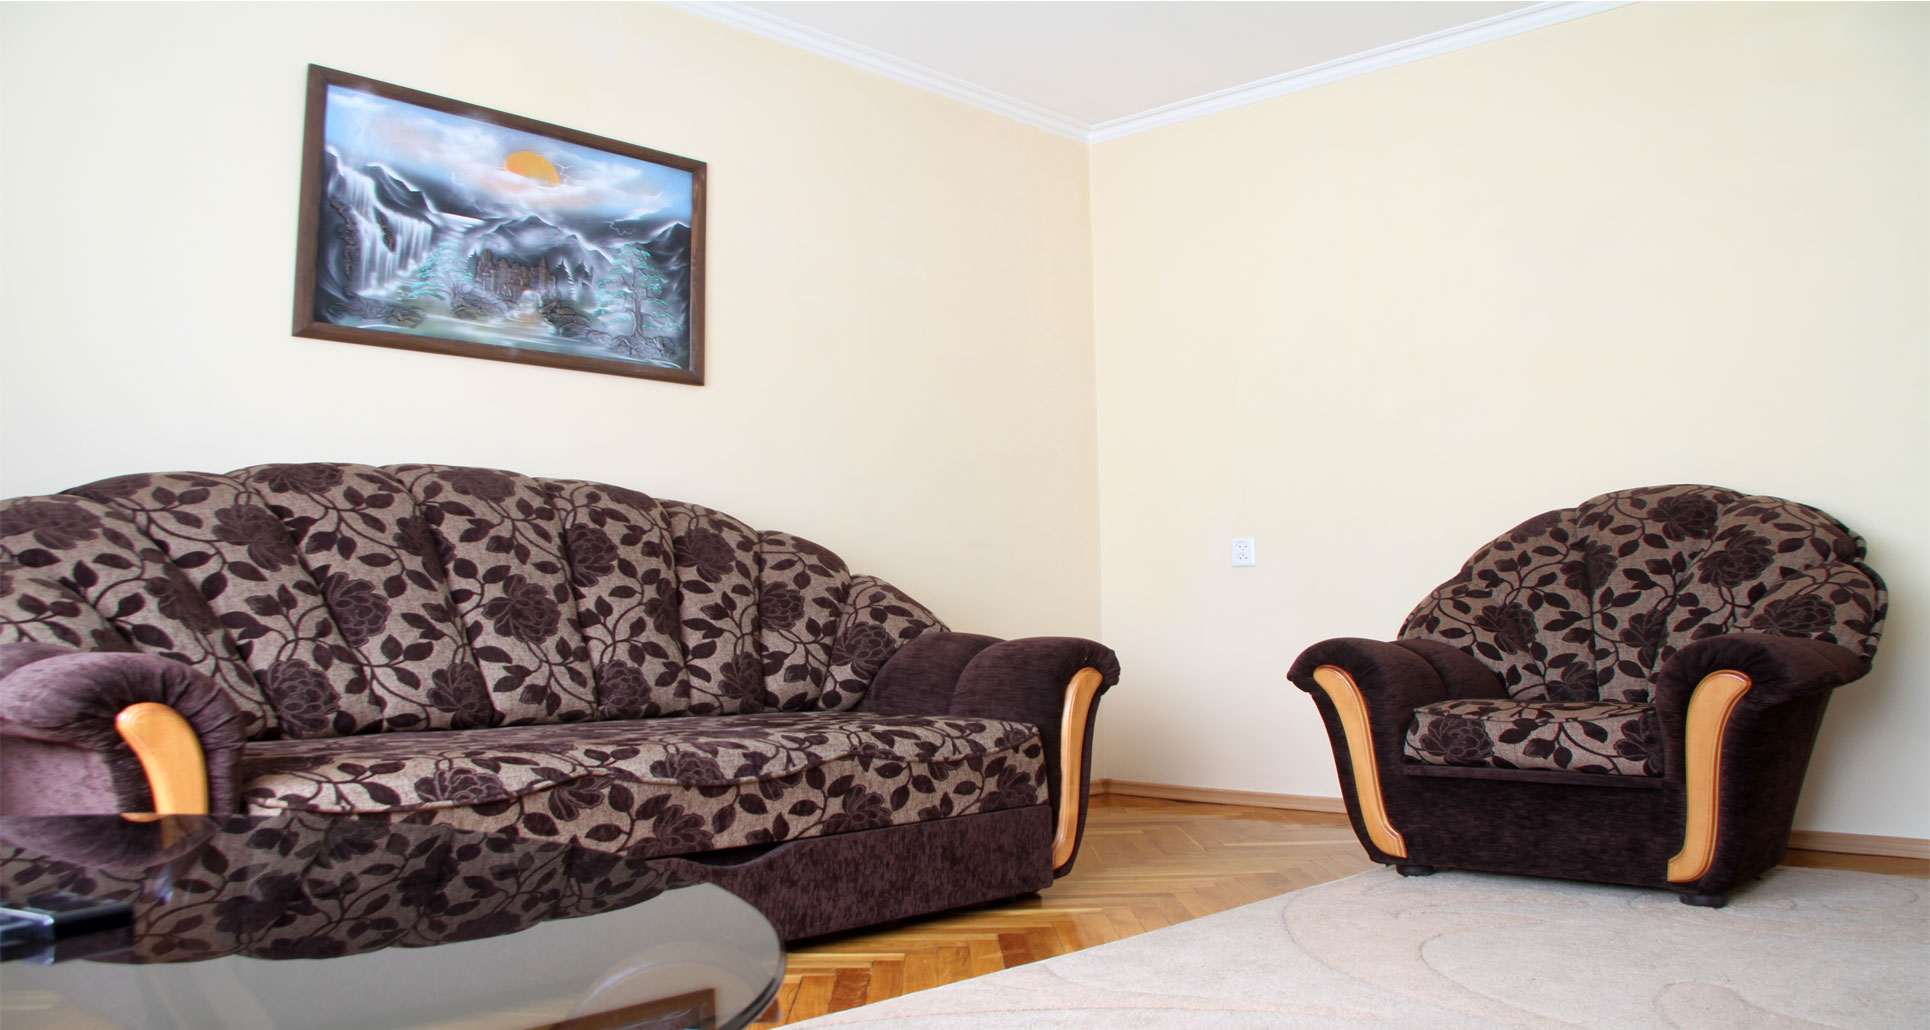 Grand Central Apartment ist ein 4 Zimmer Apartment zur Miete in Chisinau, Moldova